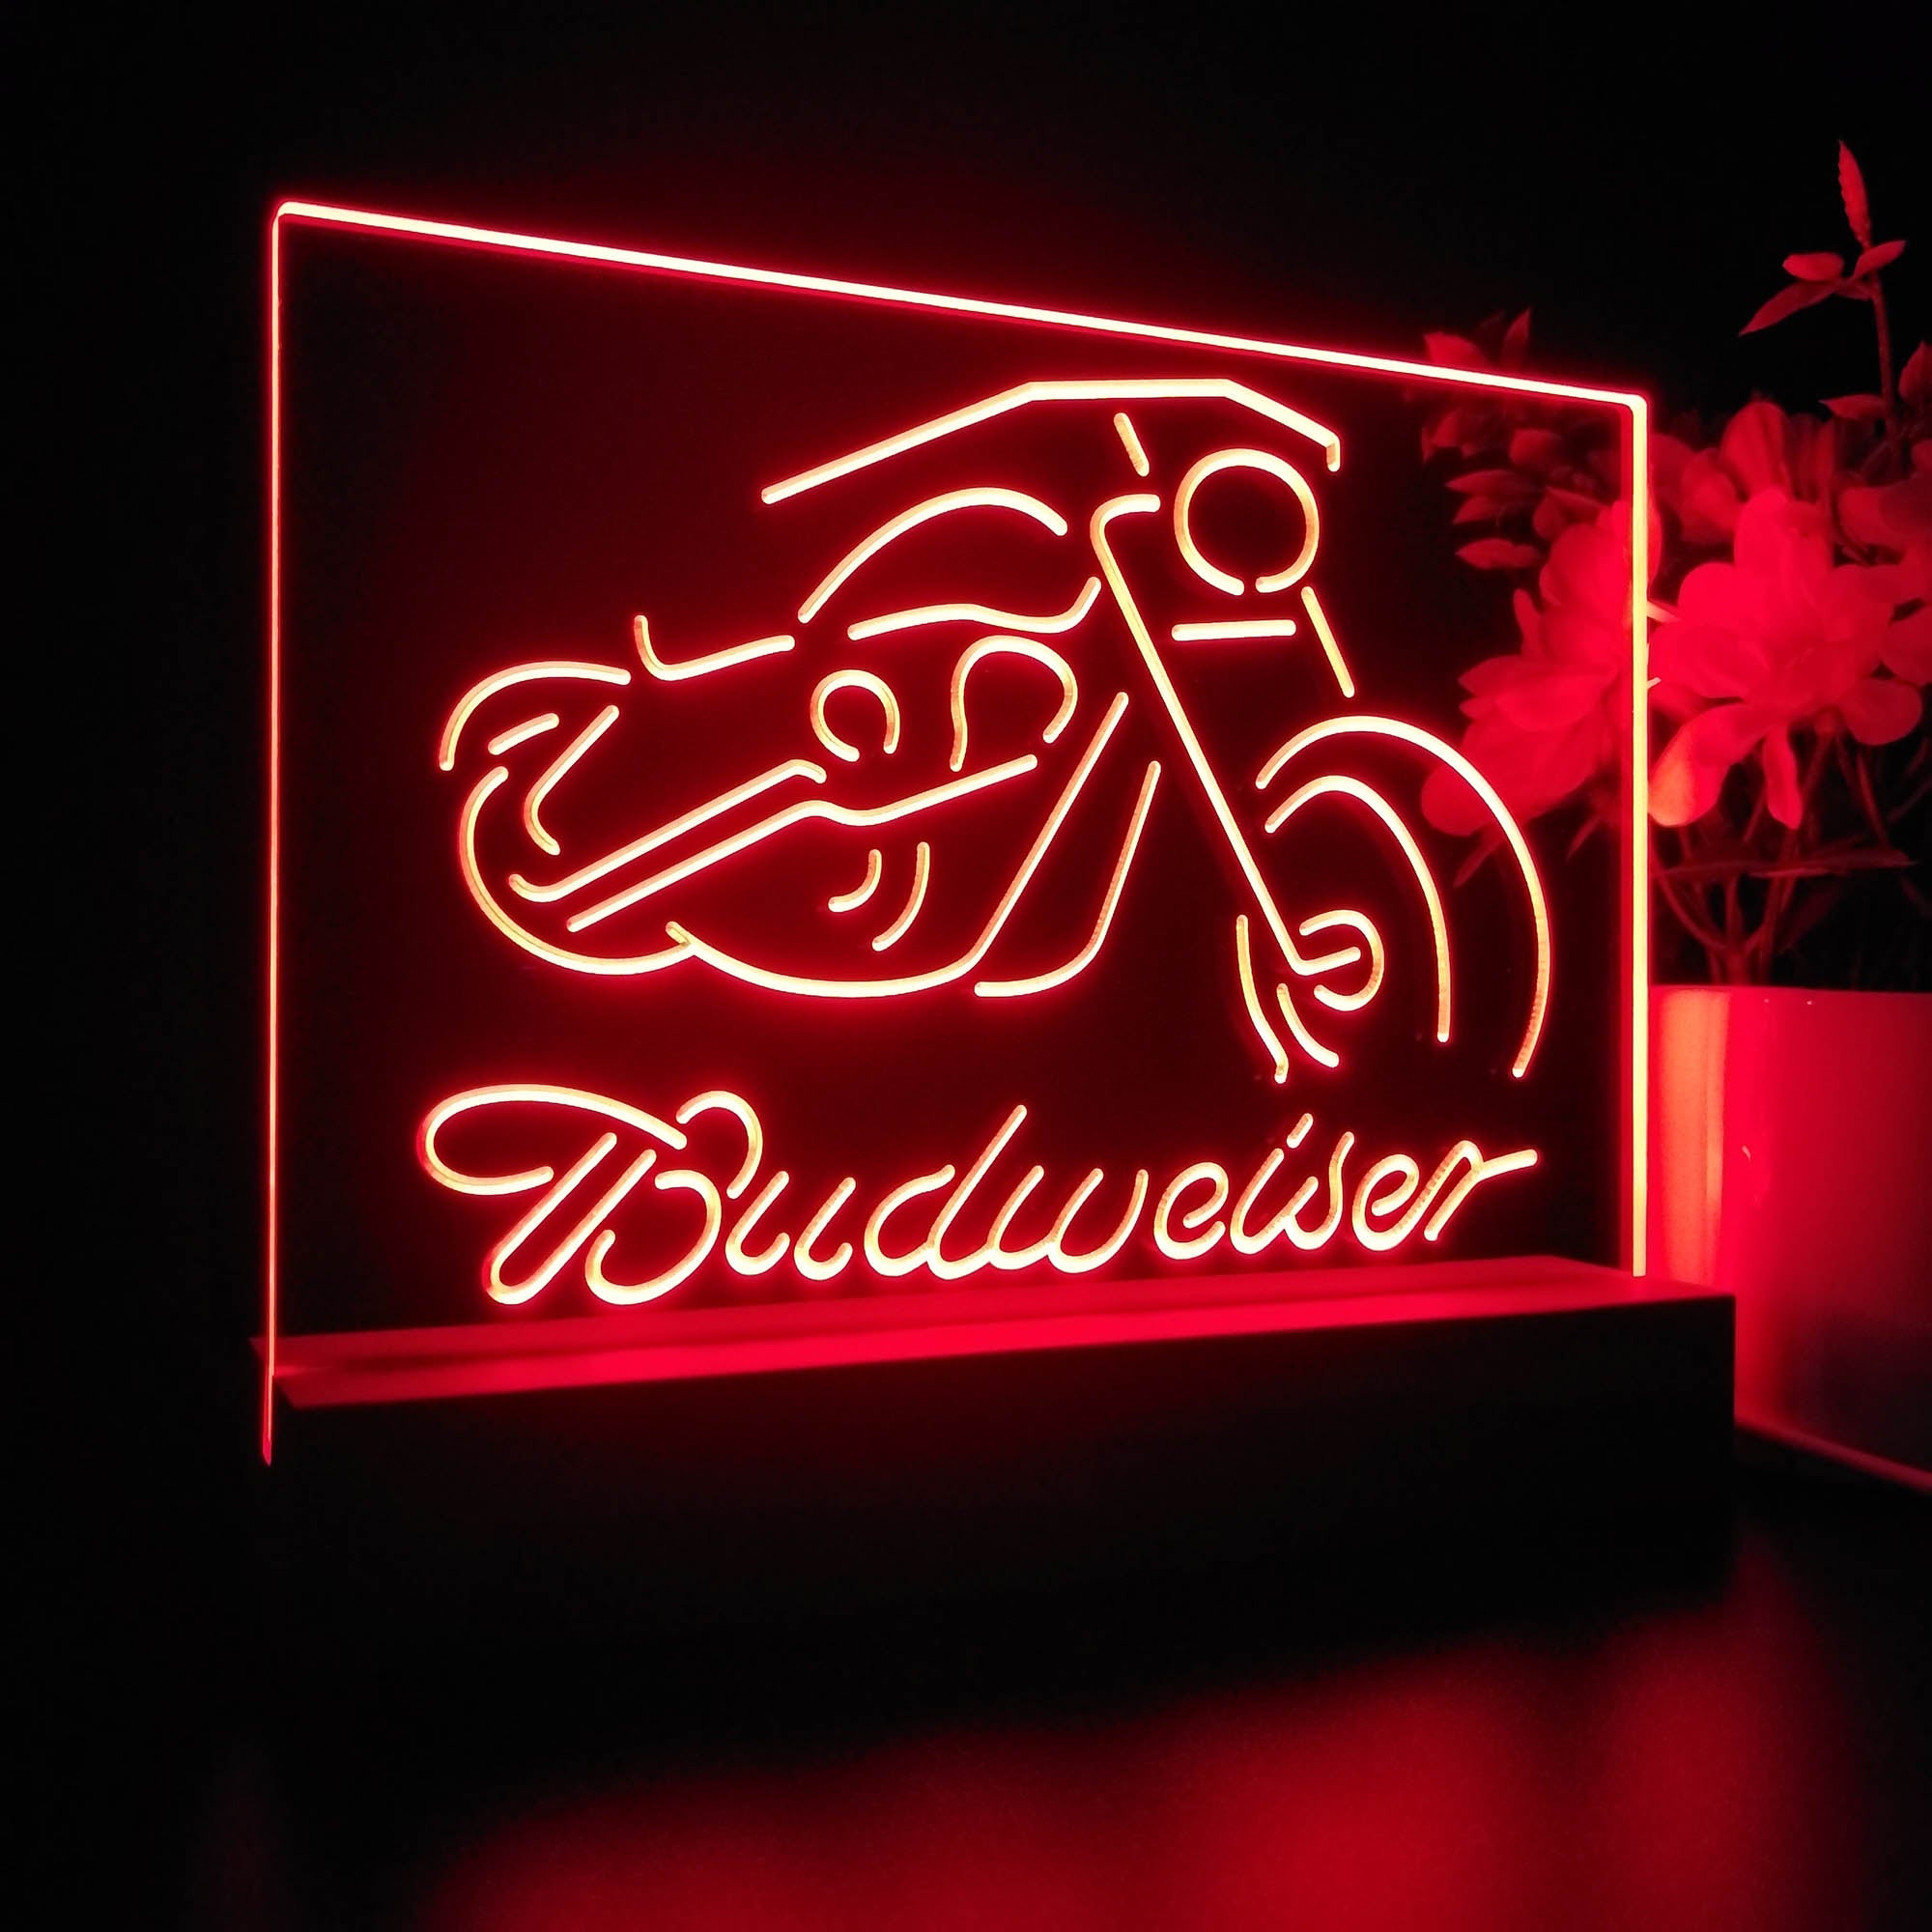 Budweiser Motorcycle Garage Night Light LED Sign